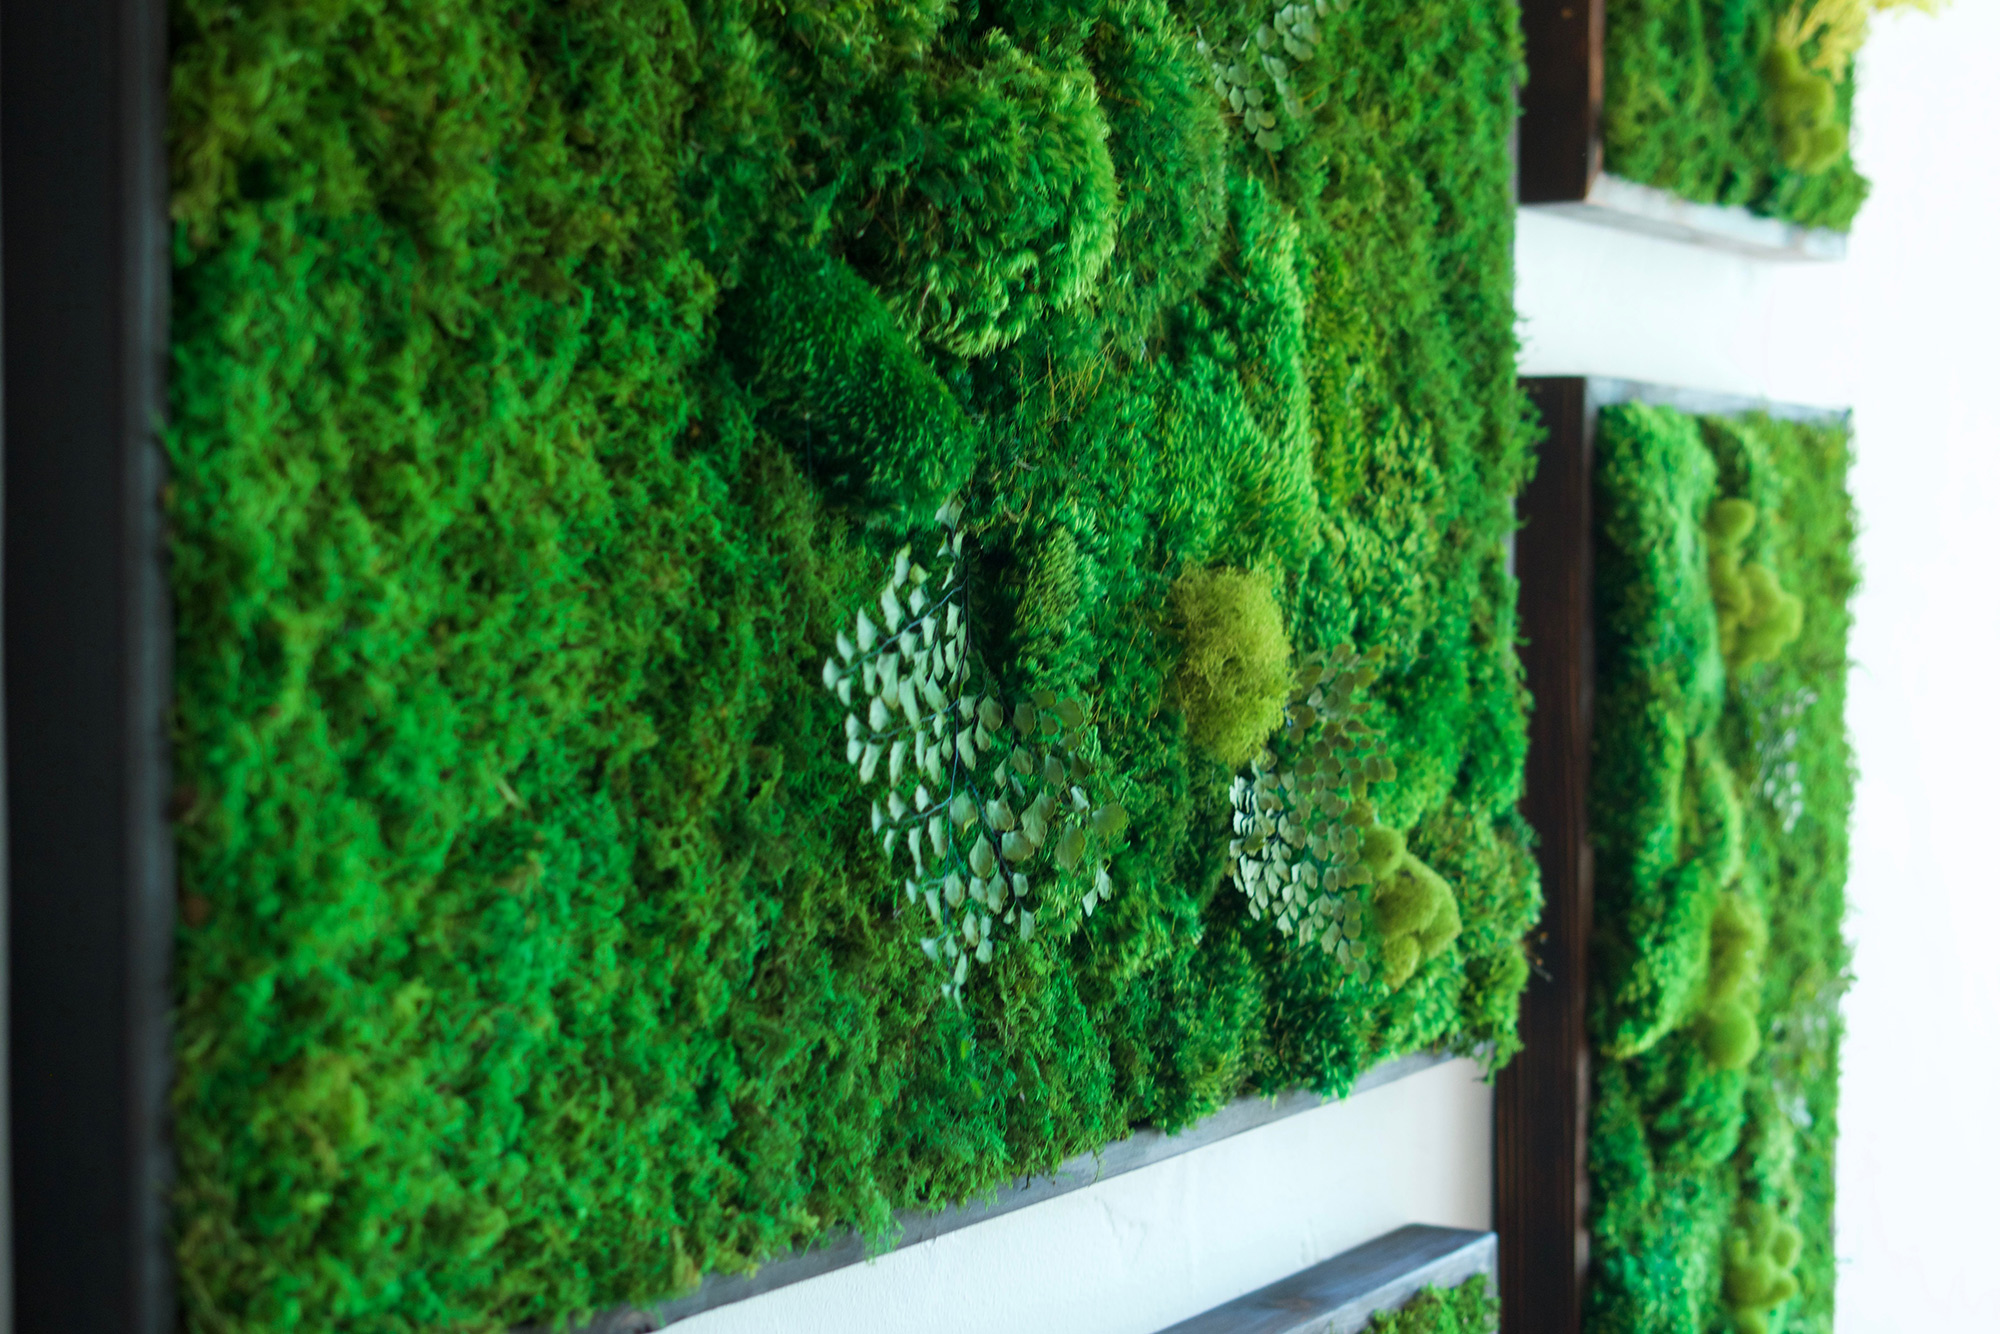 Moss Wall Art with Ferns 40 X 18